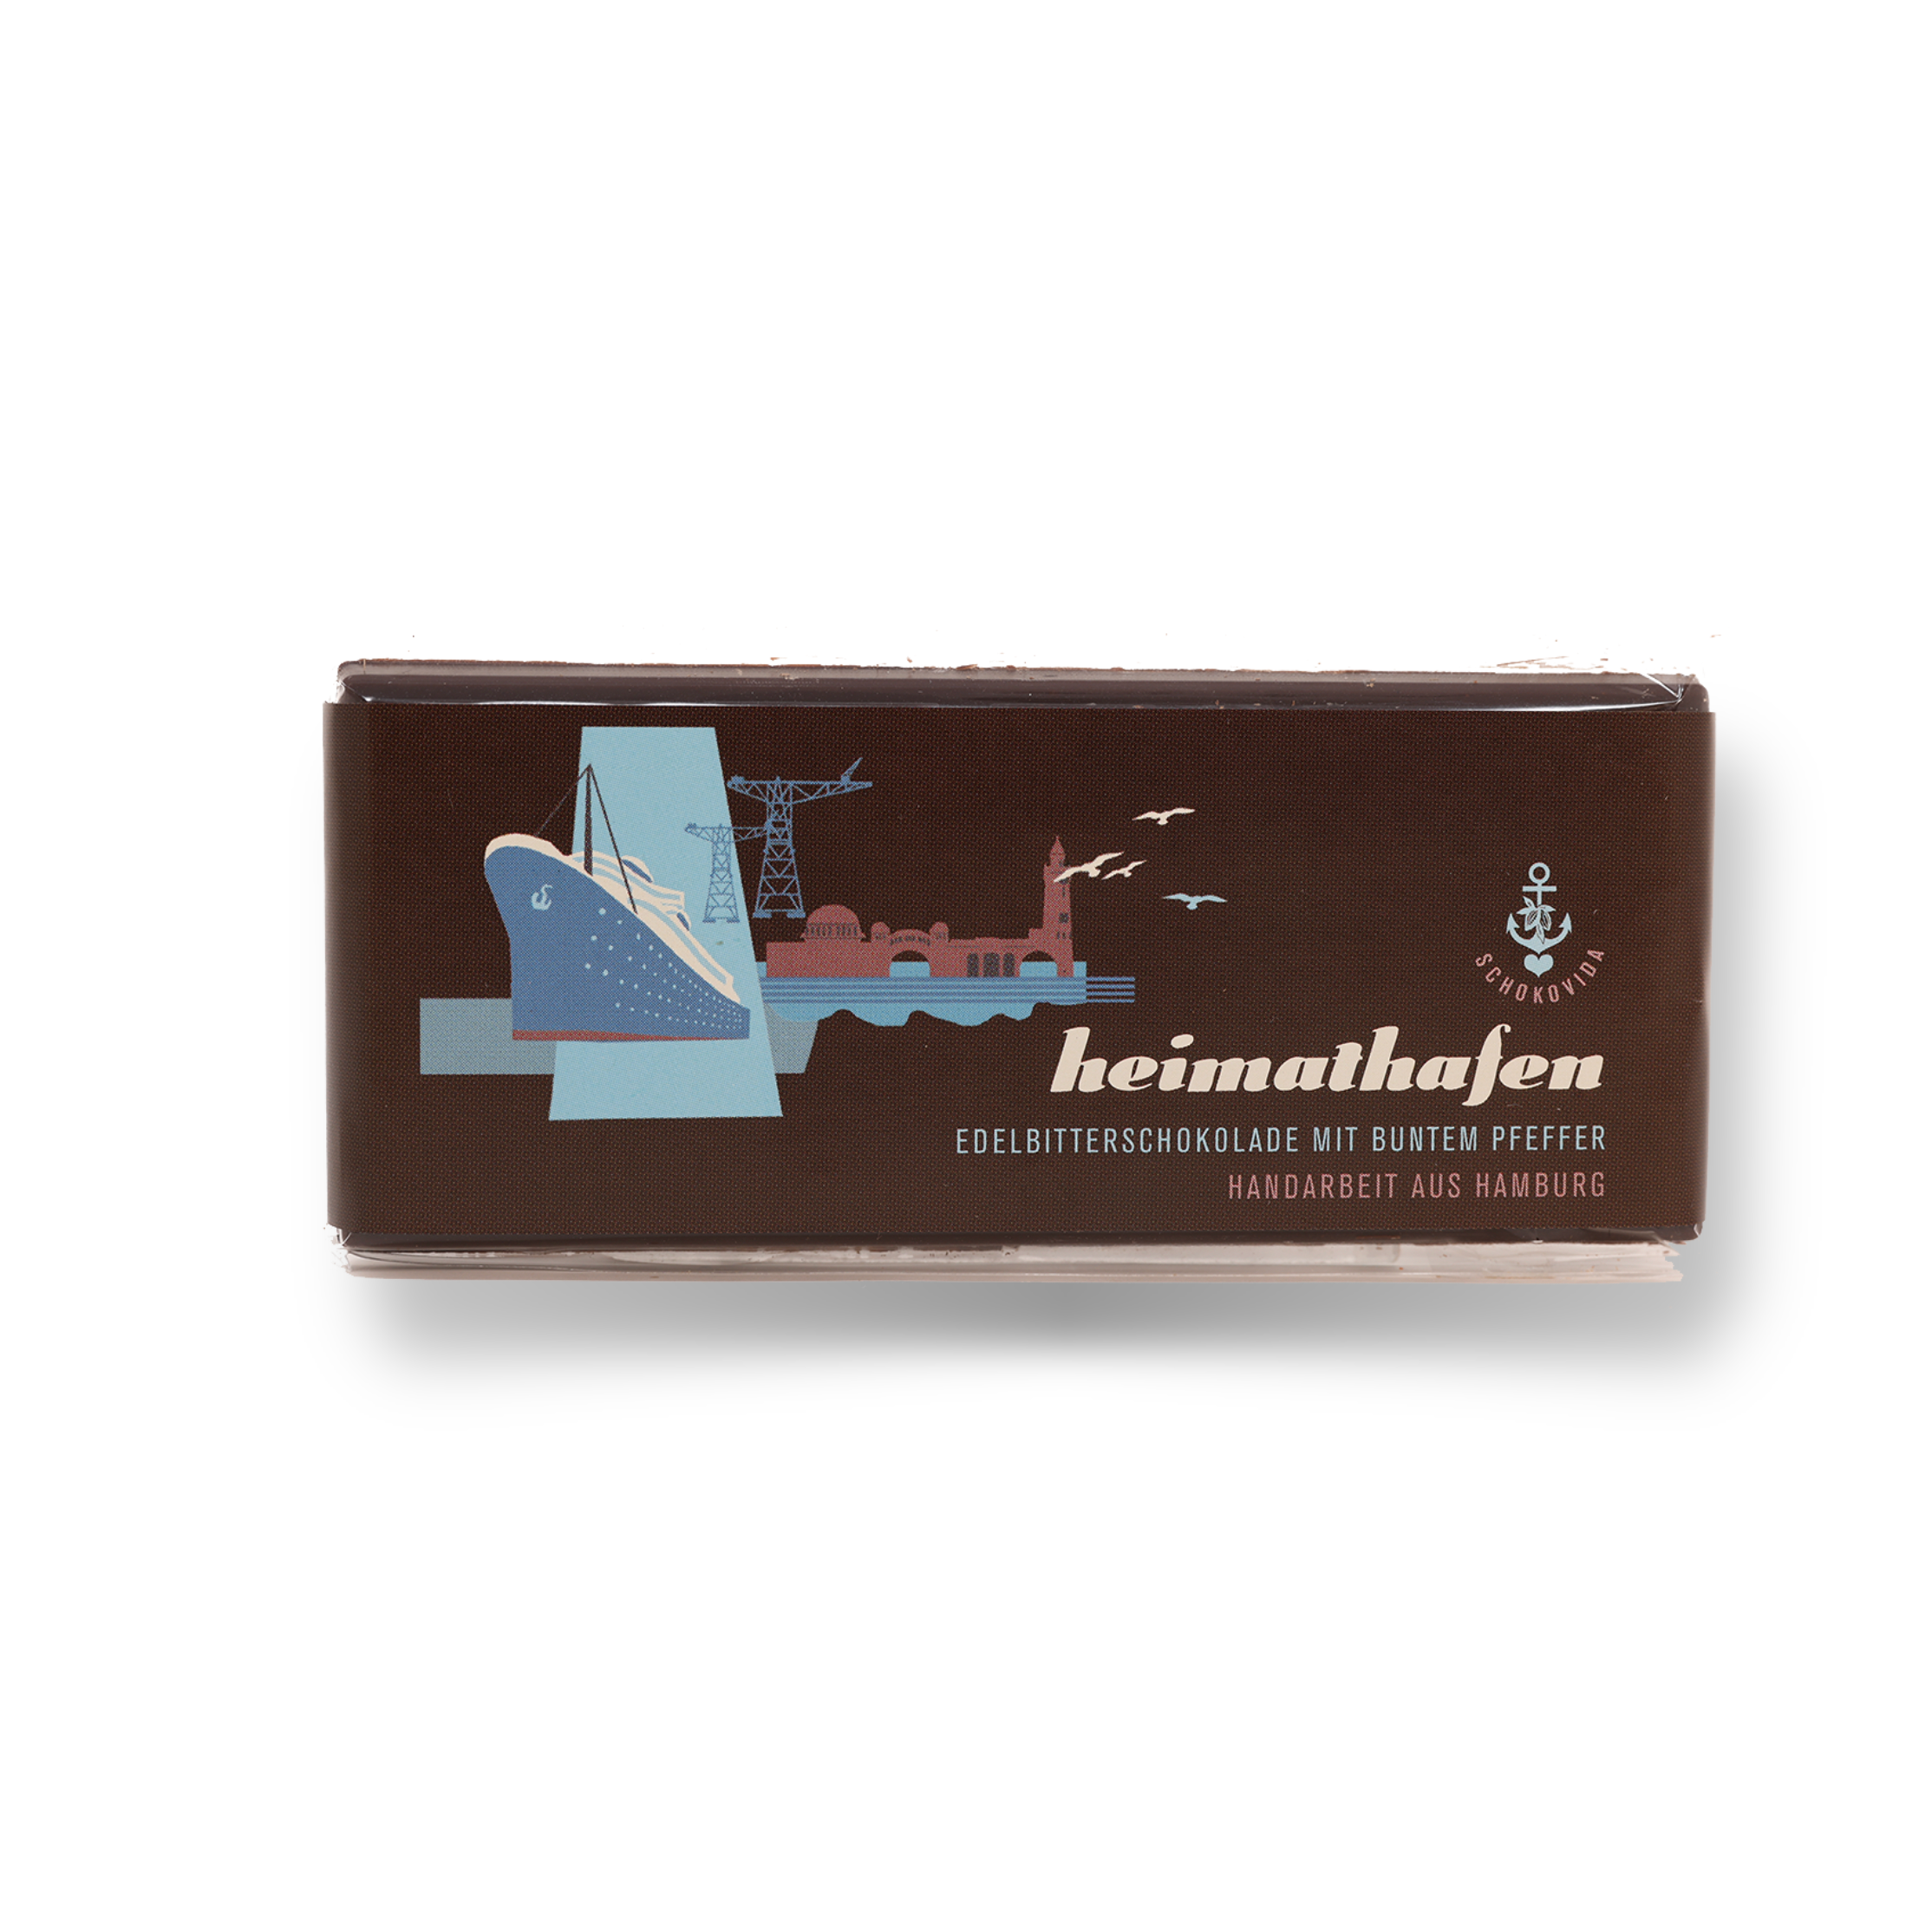 Heimathafen lütt – Edelbitterschokolade mit buntem Pfeffer, 50g